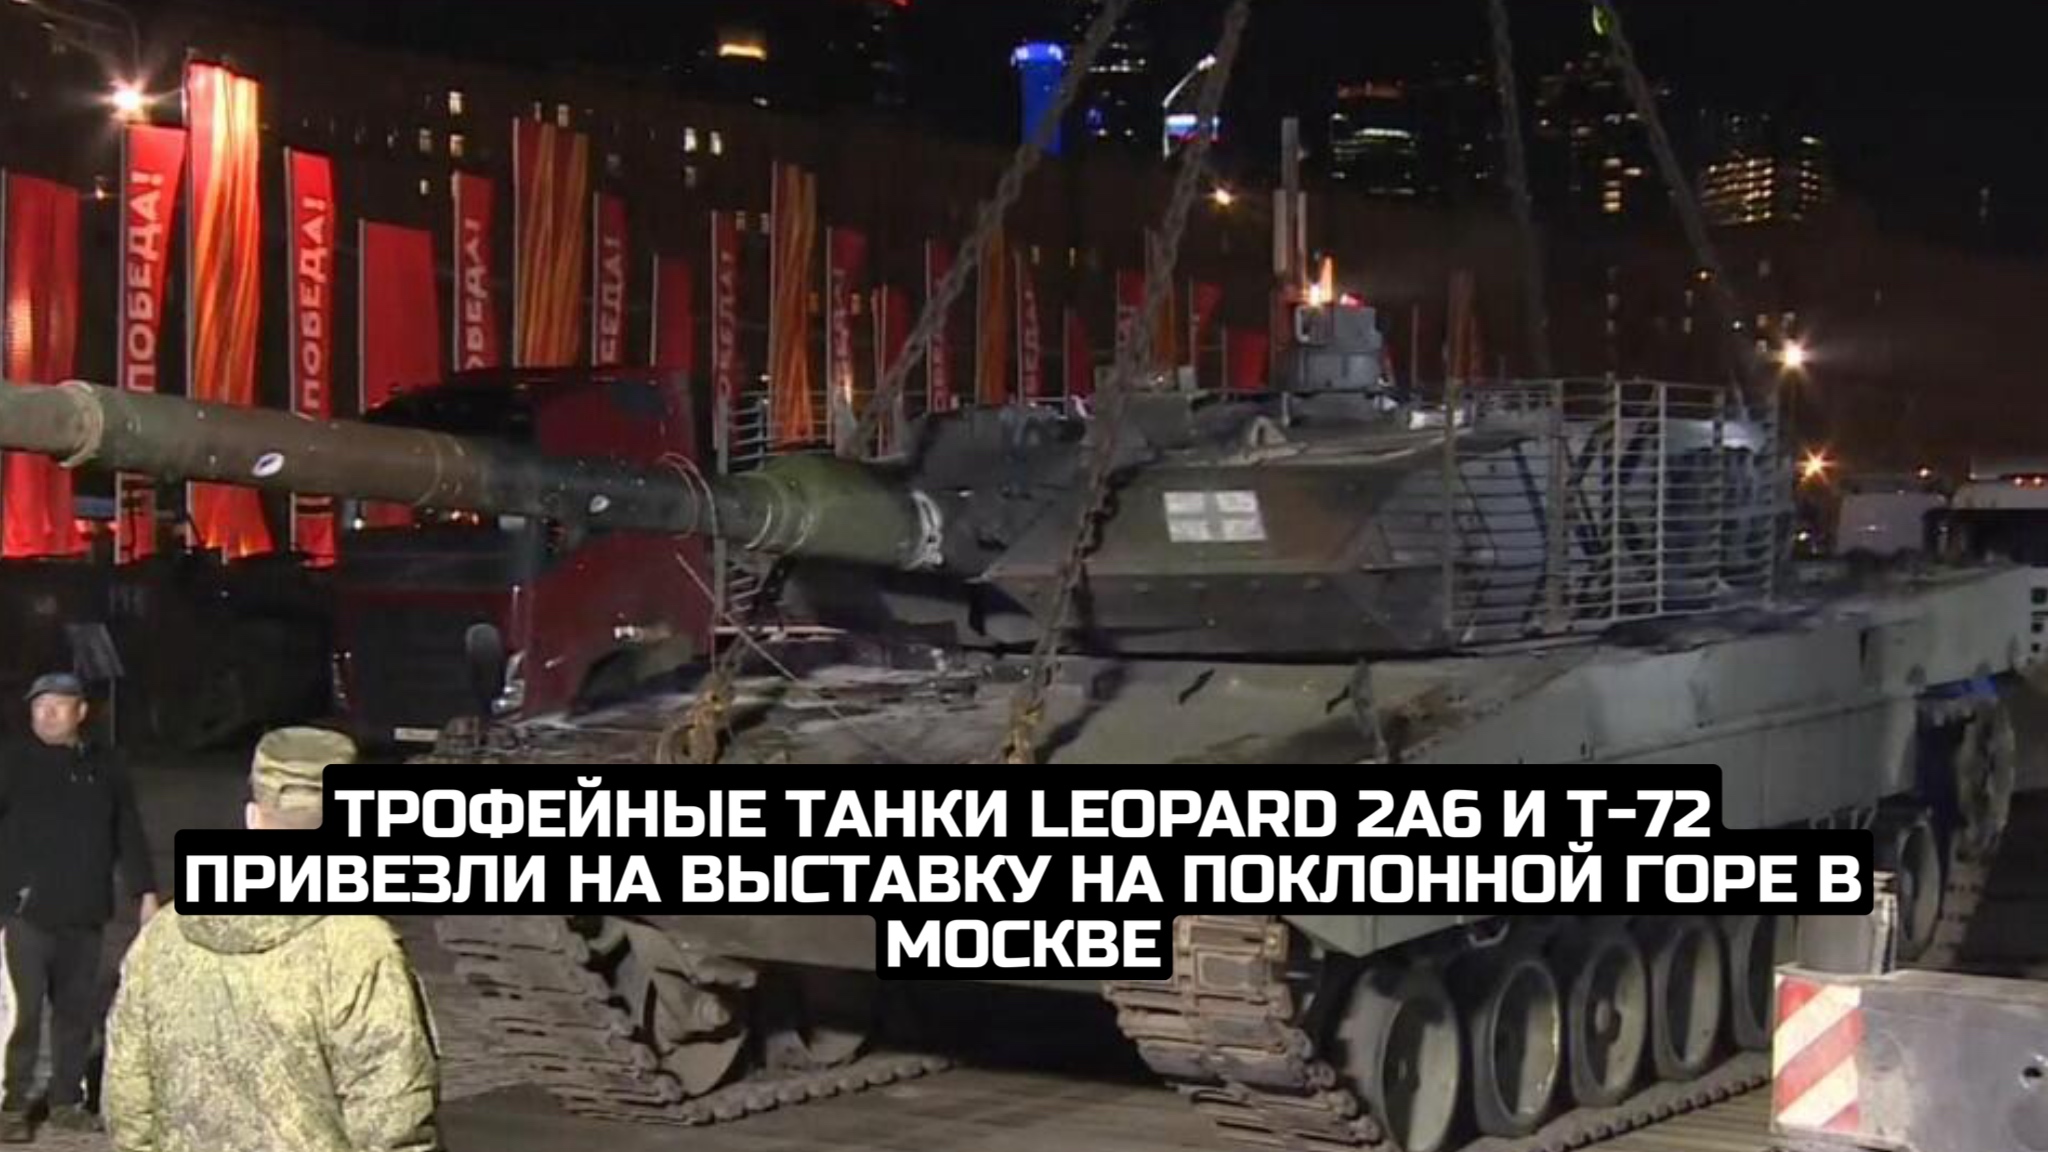 Трофейные танки Leopard 2A6 и Т-72 привезли на выставку на Поклонной горе в Москве